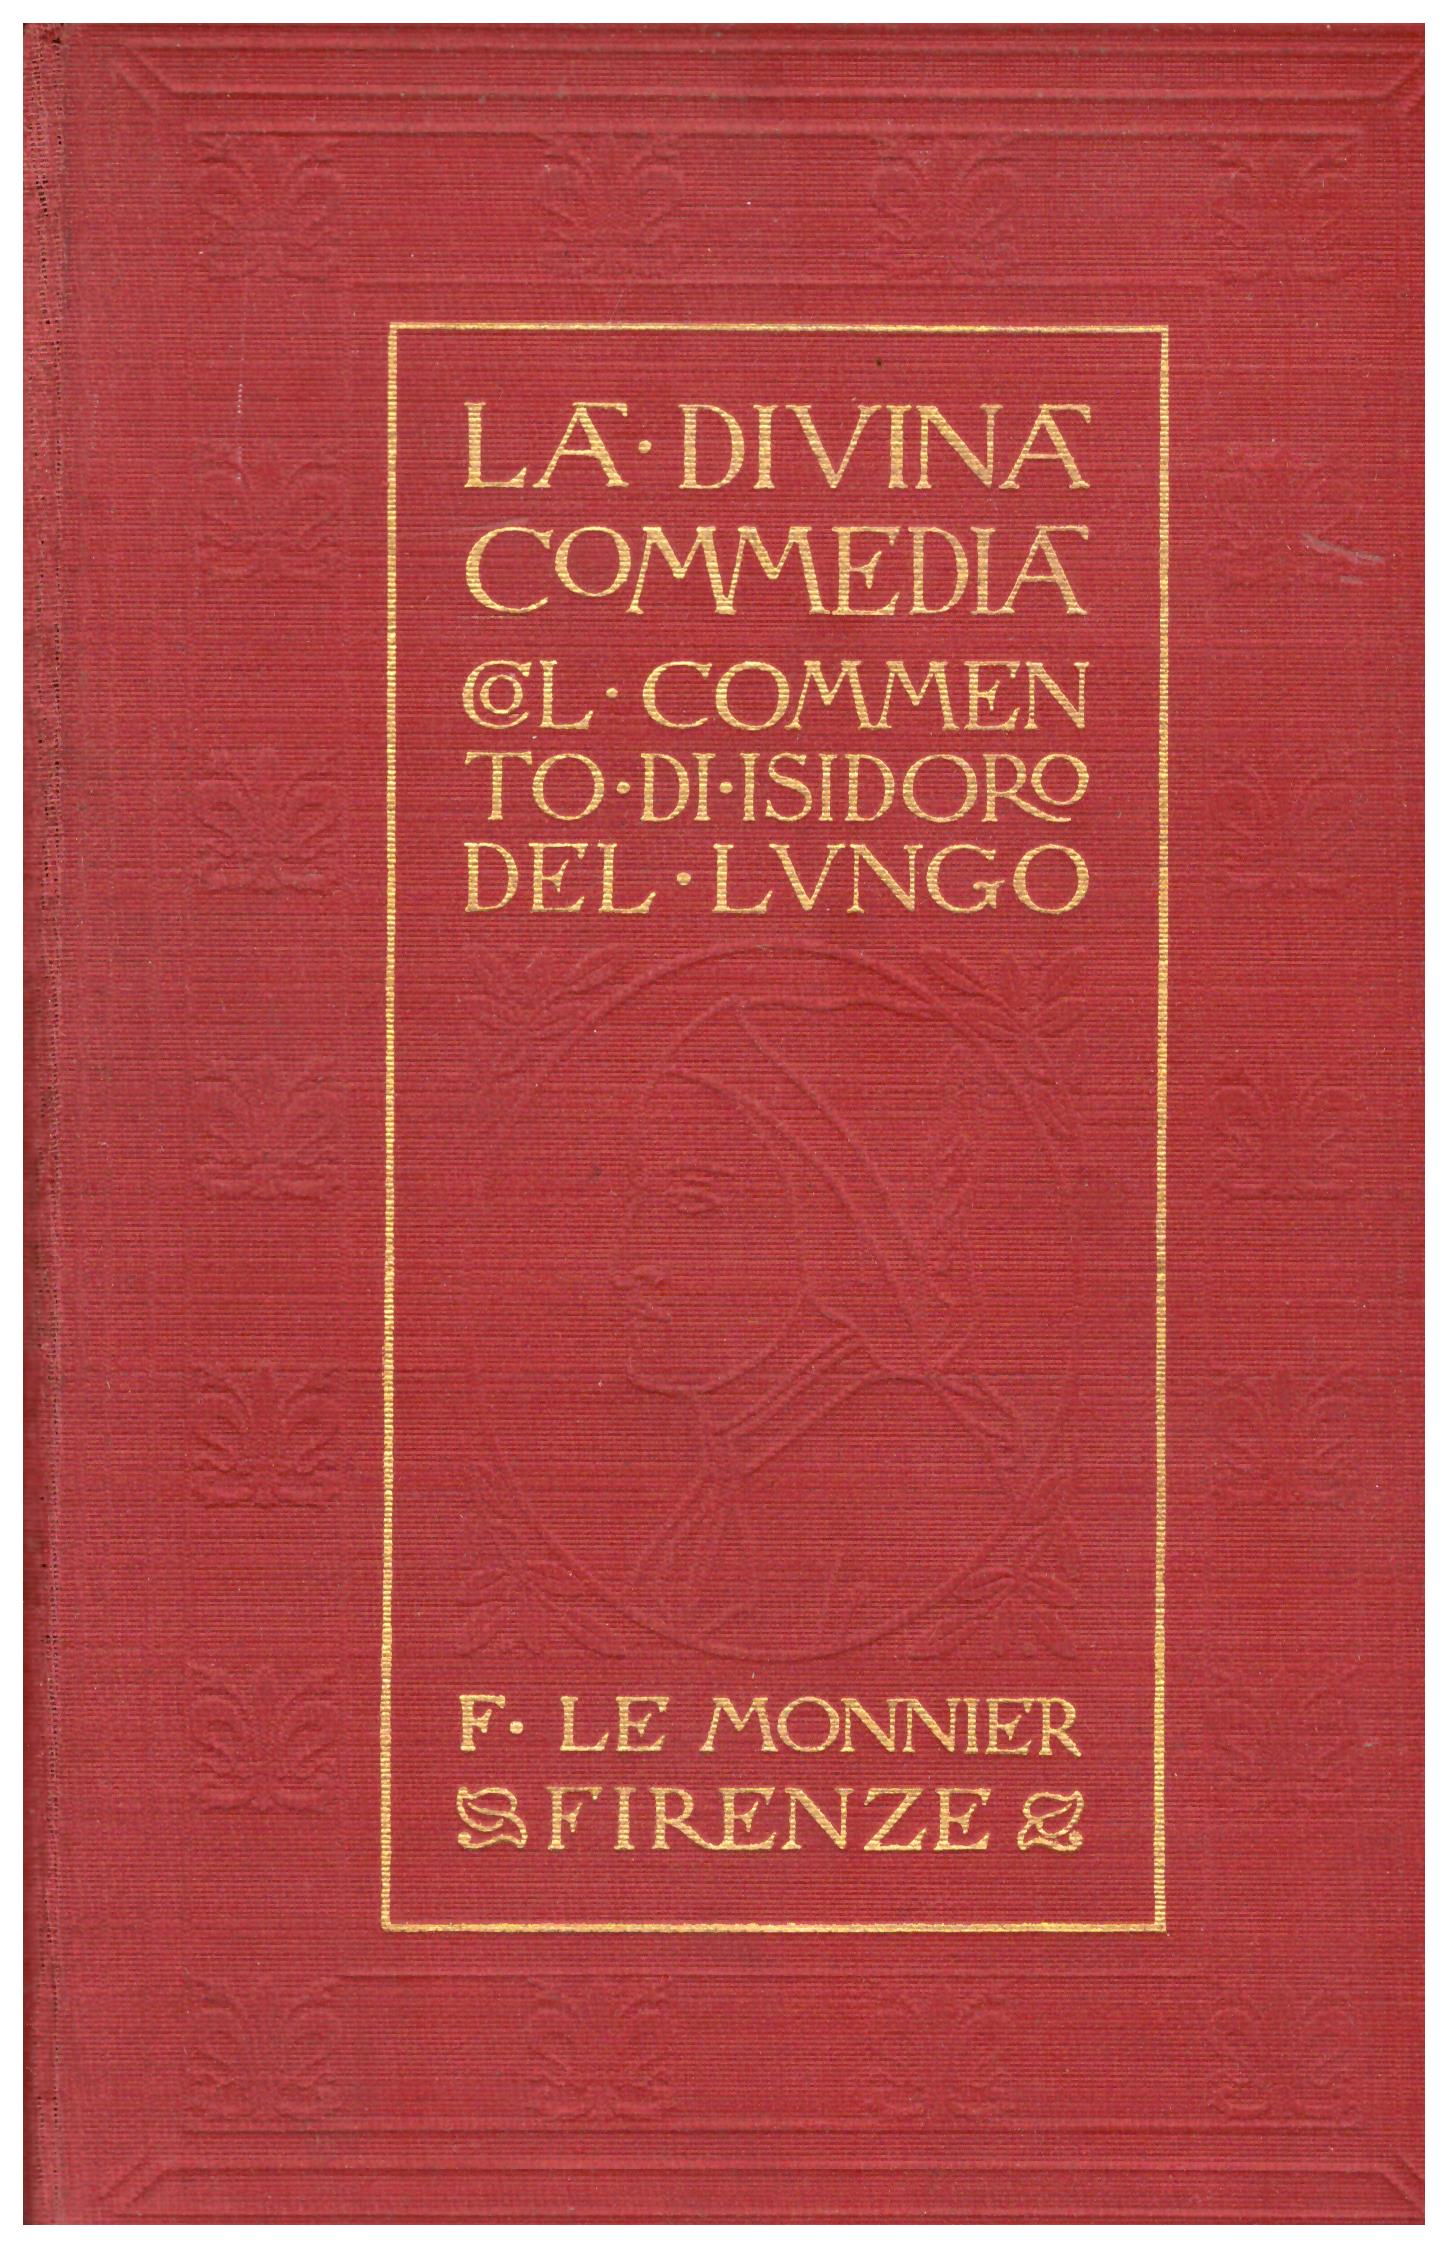 Titolo: la divina commedia Autore: Dante Alighieri Editore: F. Le Monnier, Firenze 1928